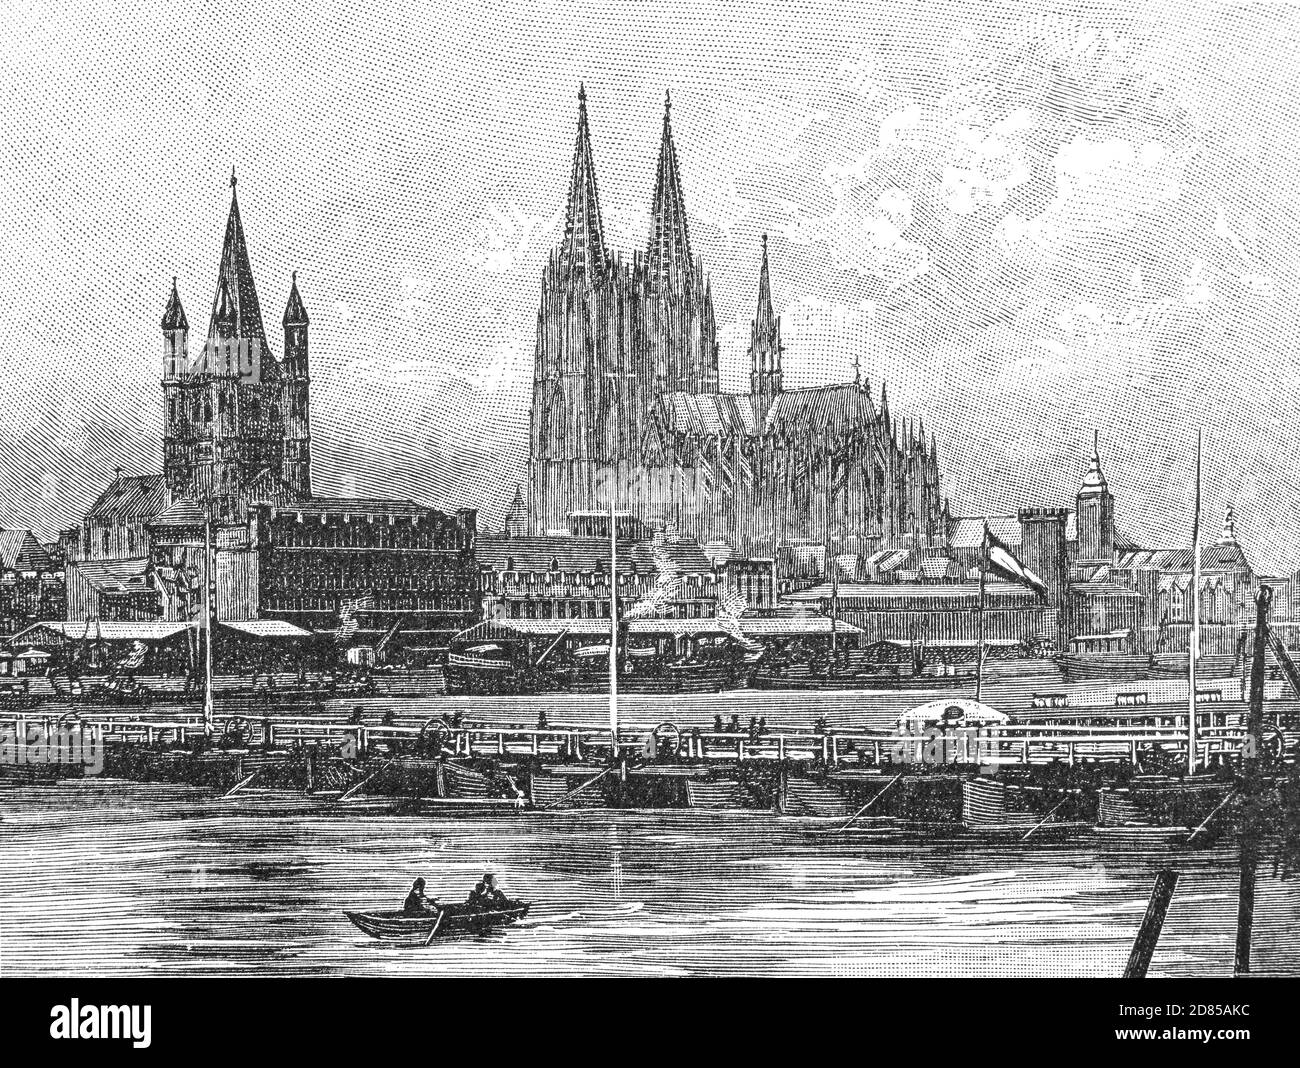 Eine Ansicht des Kölner Doms aus dem späten 19. Jahrhundert, auch bekannt als die St. Peter-Dom-Kirche, befindet sich in Köln, Nordrhein-Westfalen, Deutschland. Der Bau der katholischen Kathedrale begann im Jahr 1248, wurde aber in den Jahren um 1560 unvollendet gestoppt. Die Arbeiten wurden in den 1840er Jahren wieder aufgenommen, und das Gebäude wurde 1880 nach seinem ursprünglichen mittelalterlichen Plan fertiggestellt. Teilweise vom Staat finanziert, galt es als ein Projekt, um die deutsche Nationalschaft zu symbolisieren. Stockfoto